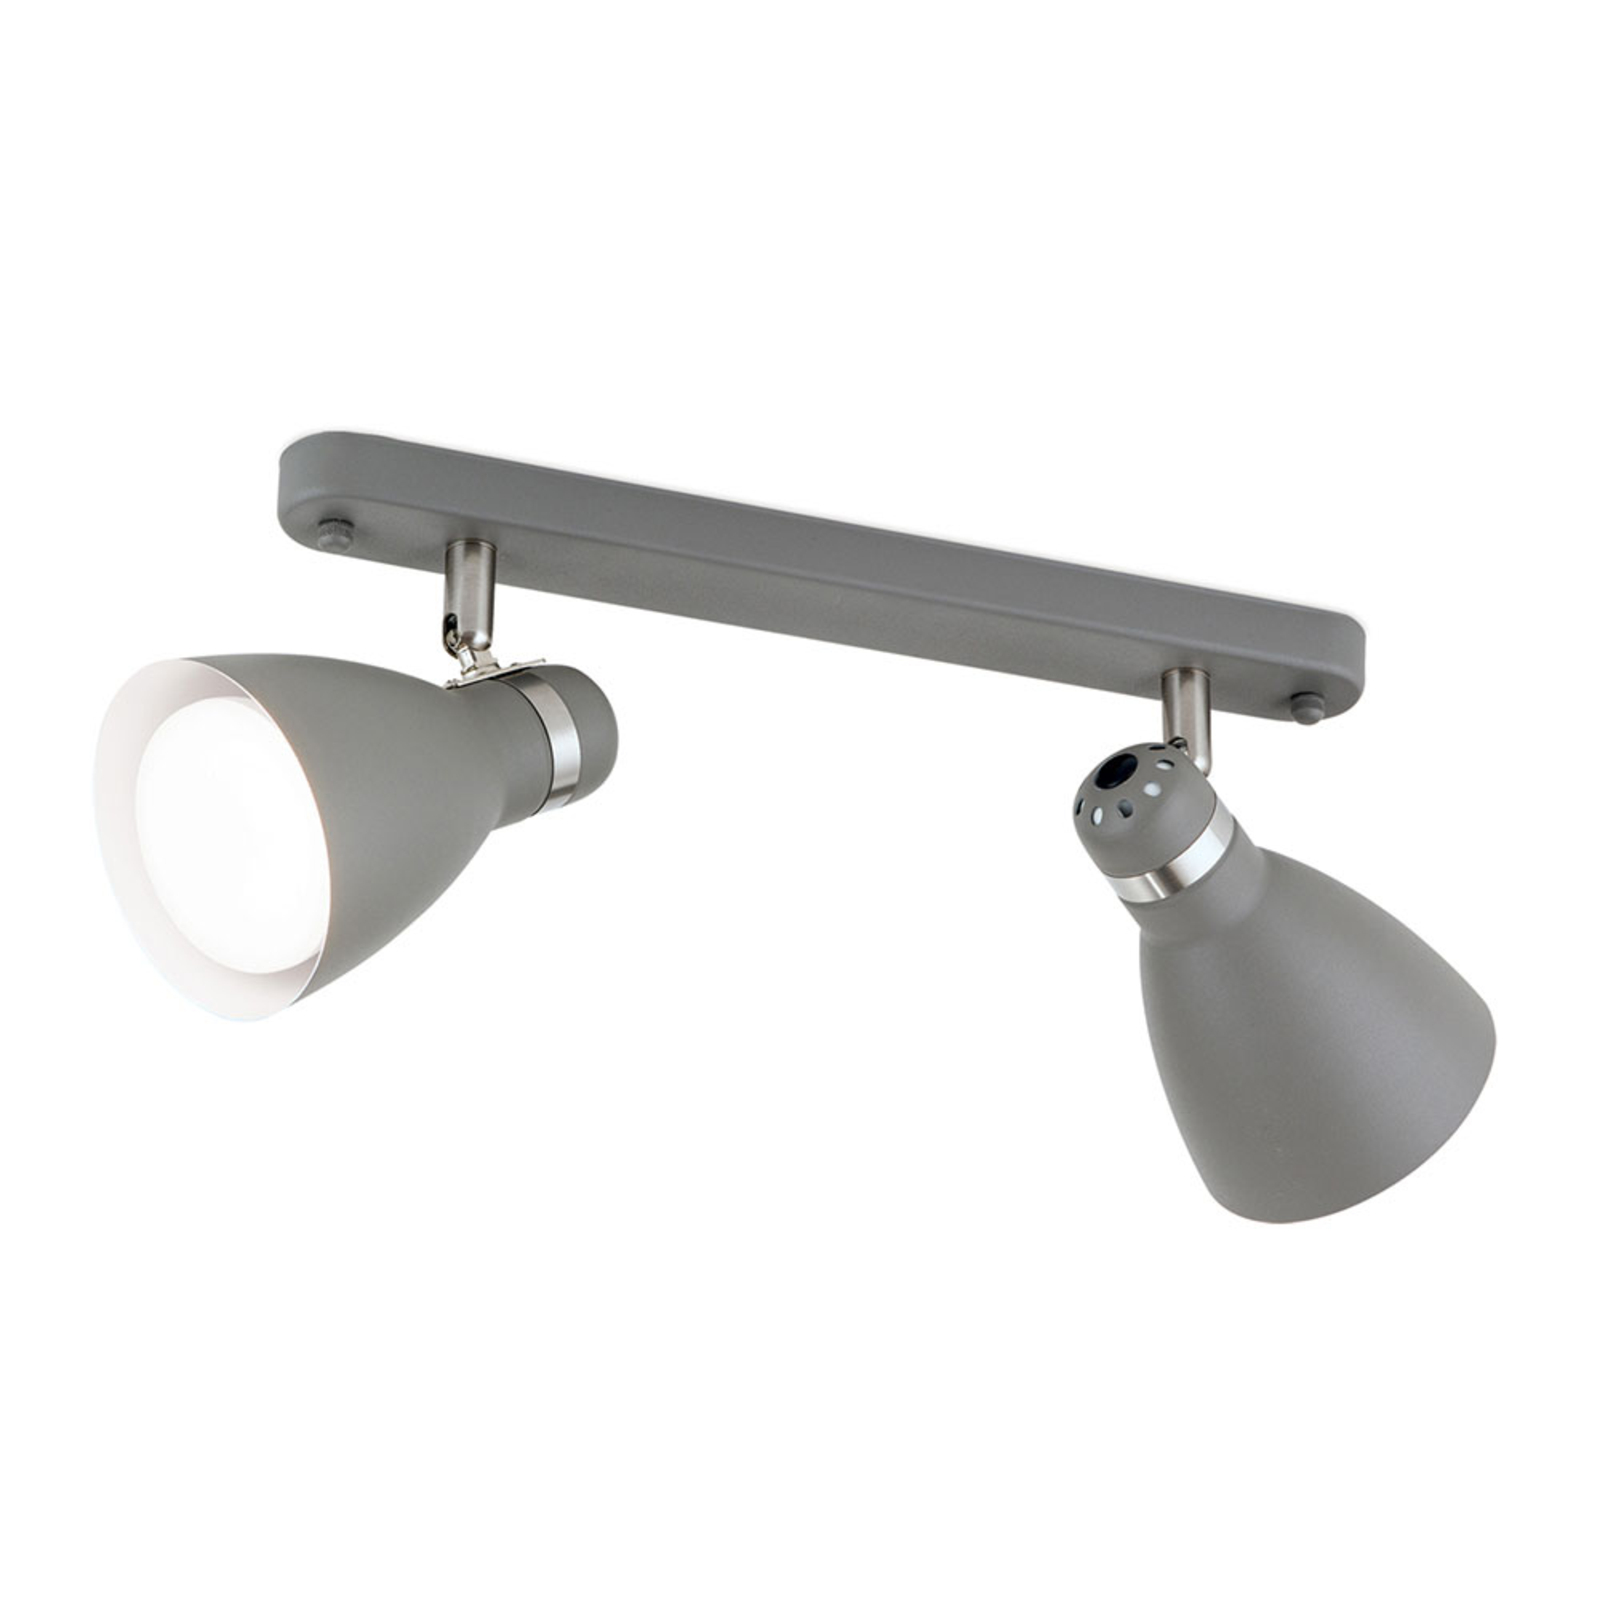 School ceiling spotlight, two-bulb, grey